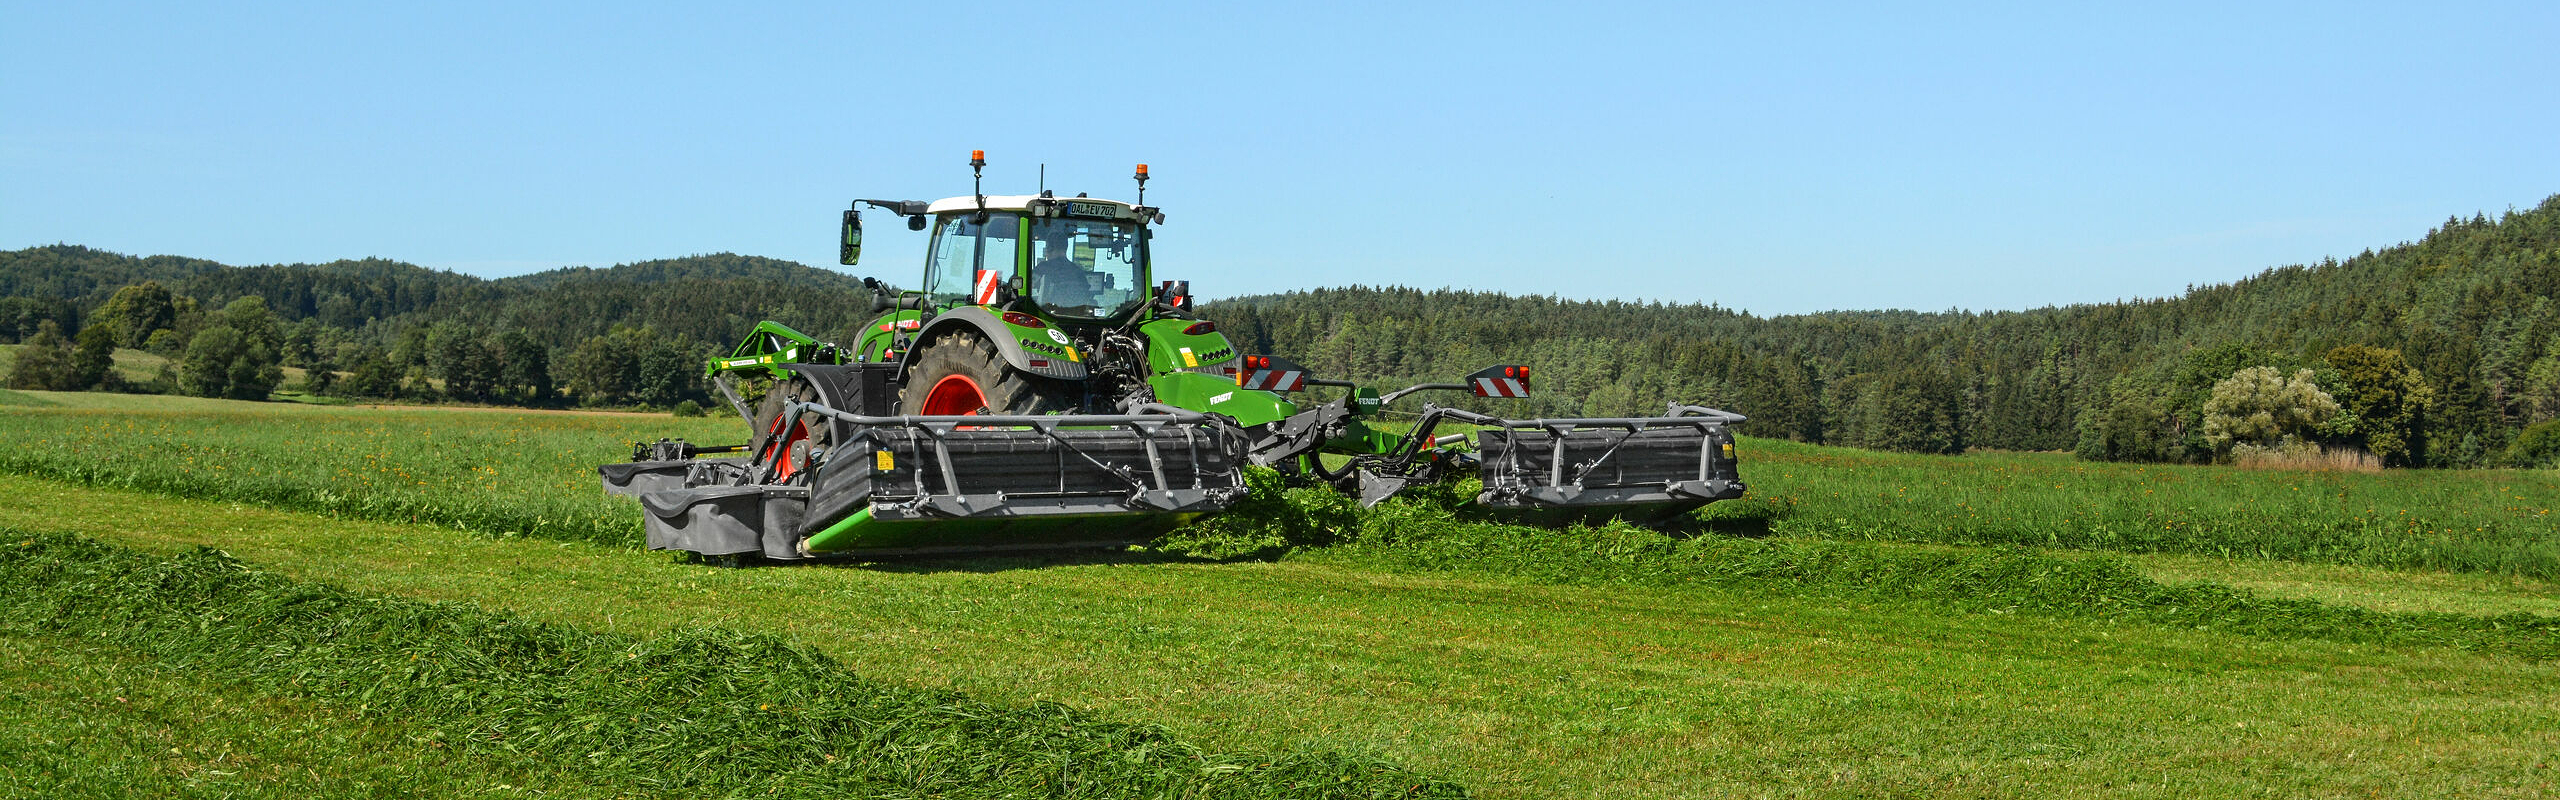 Fendt traktor på den grønne mark under høst med Fendt Slicer